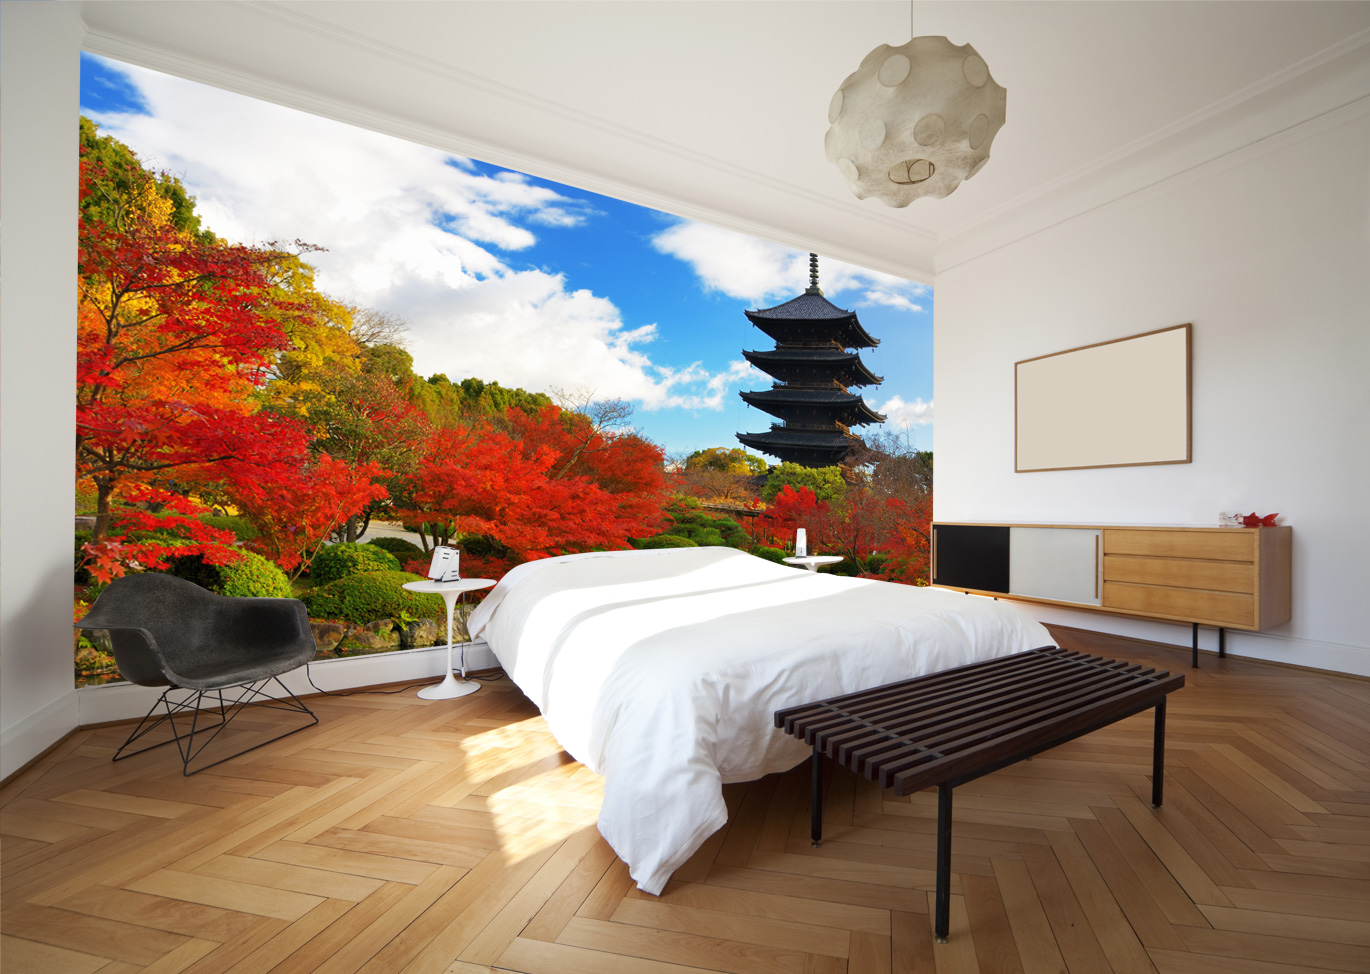 Japanese-garden-wall-mural-in-bedroom